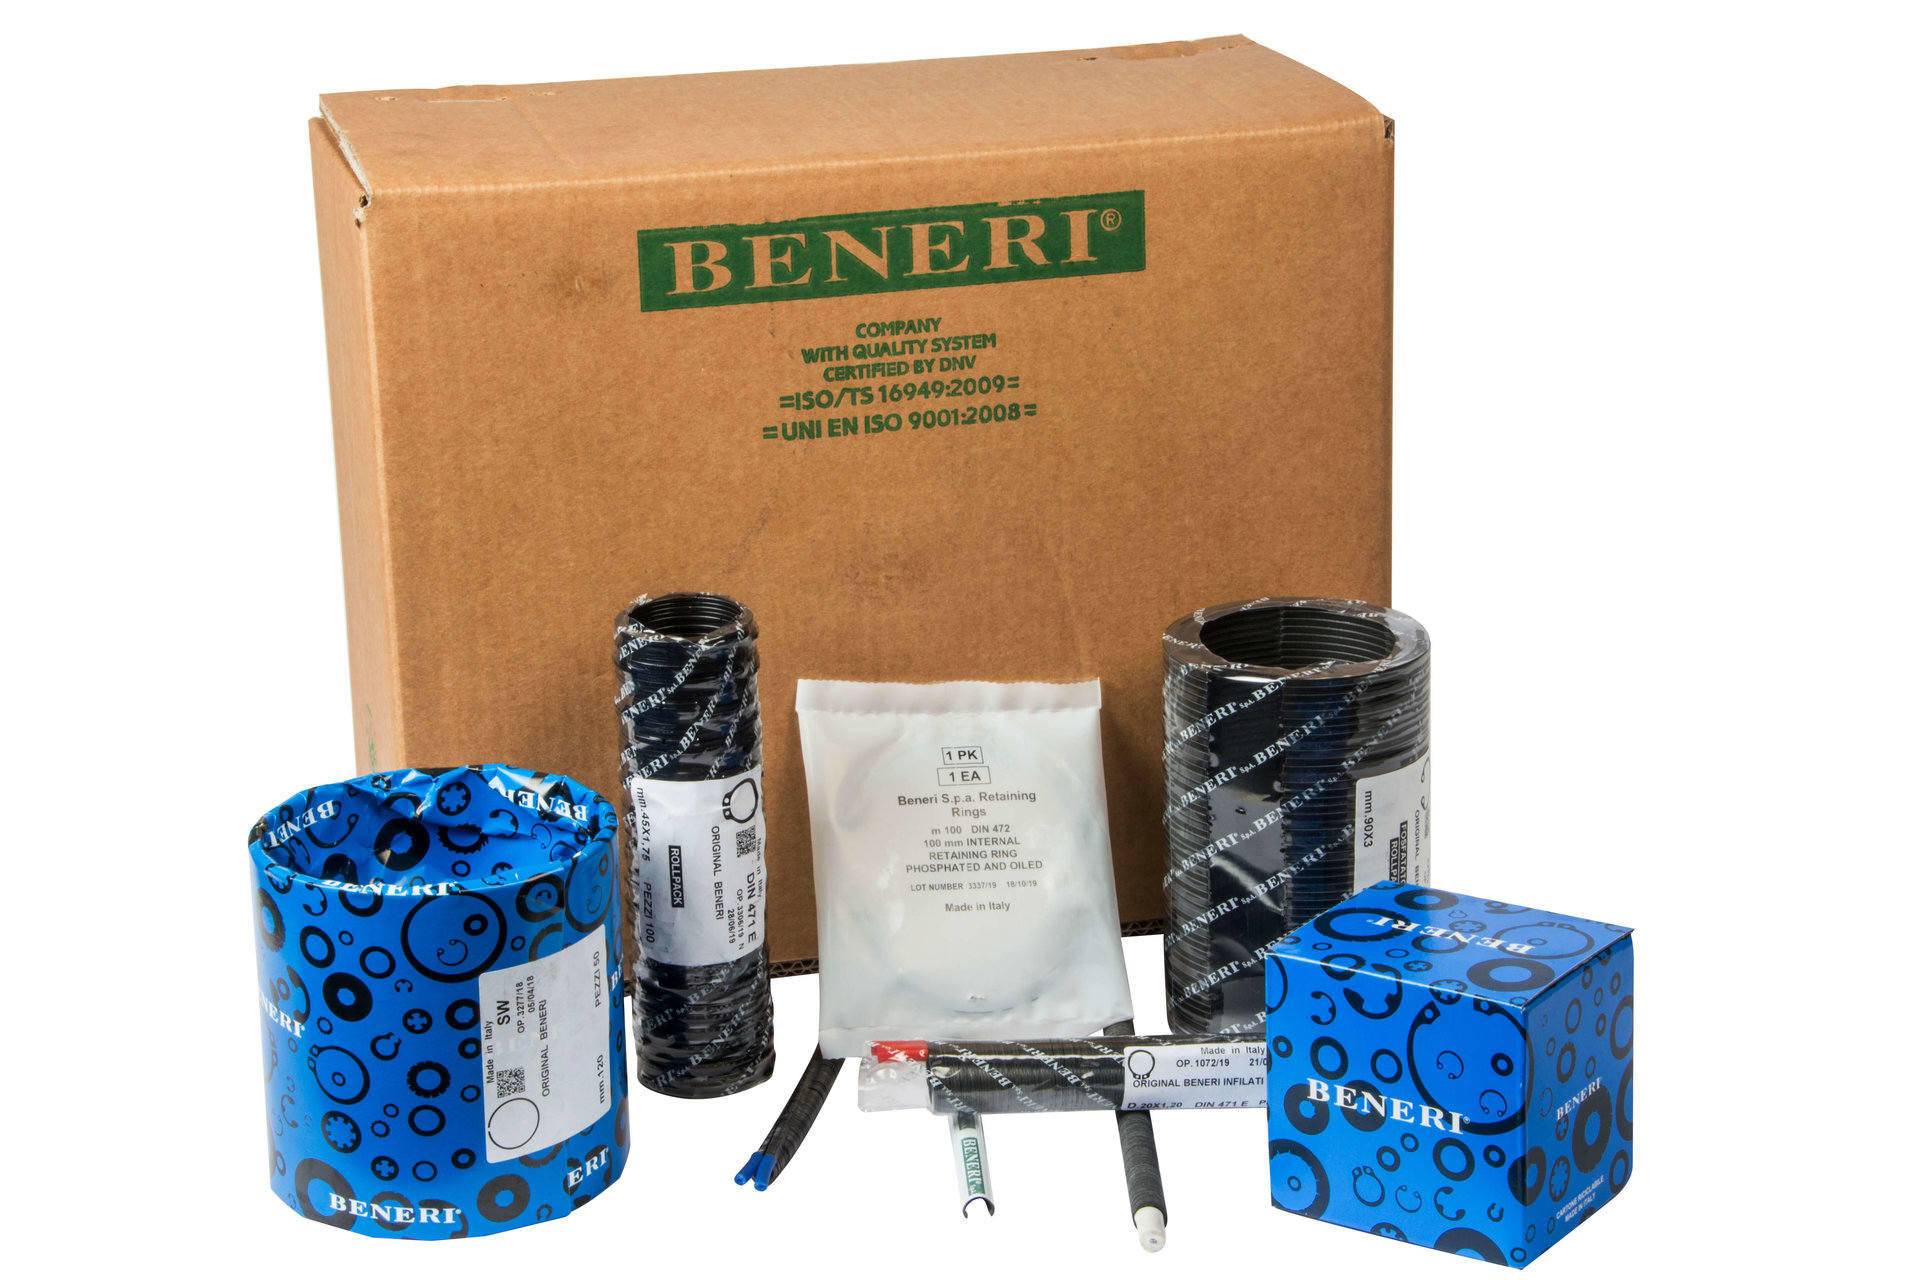 l'emballage des produits Beneri